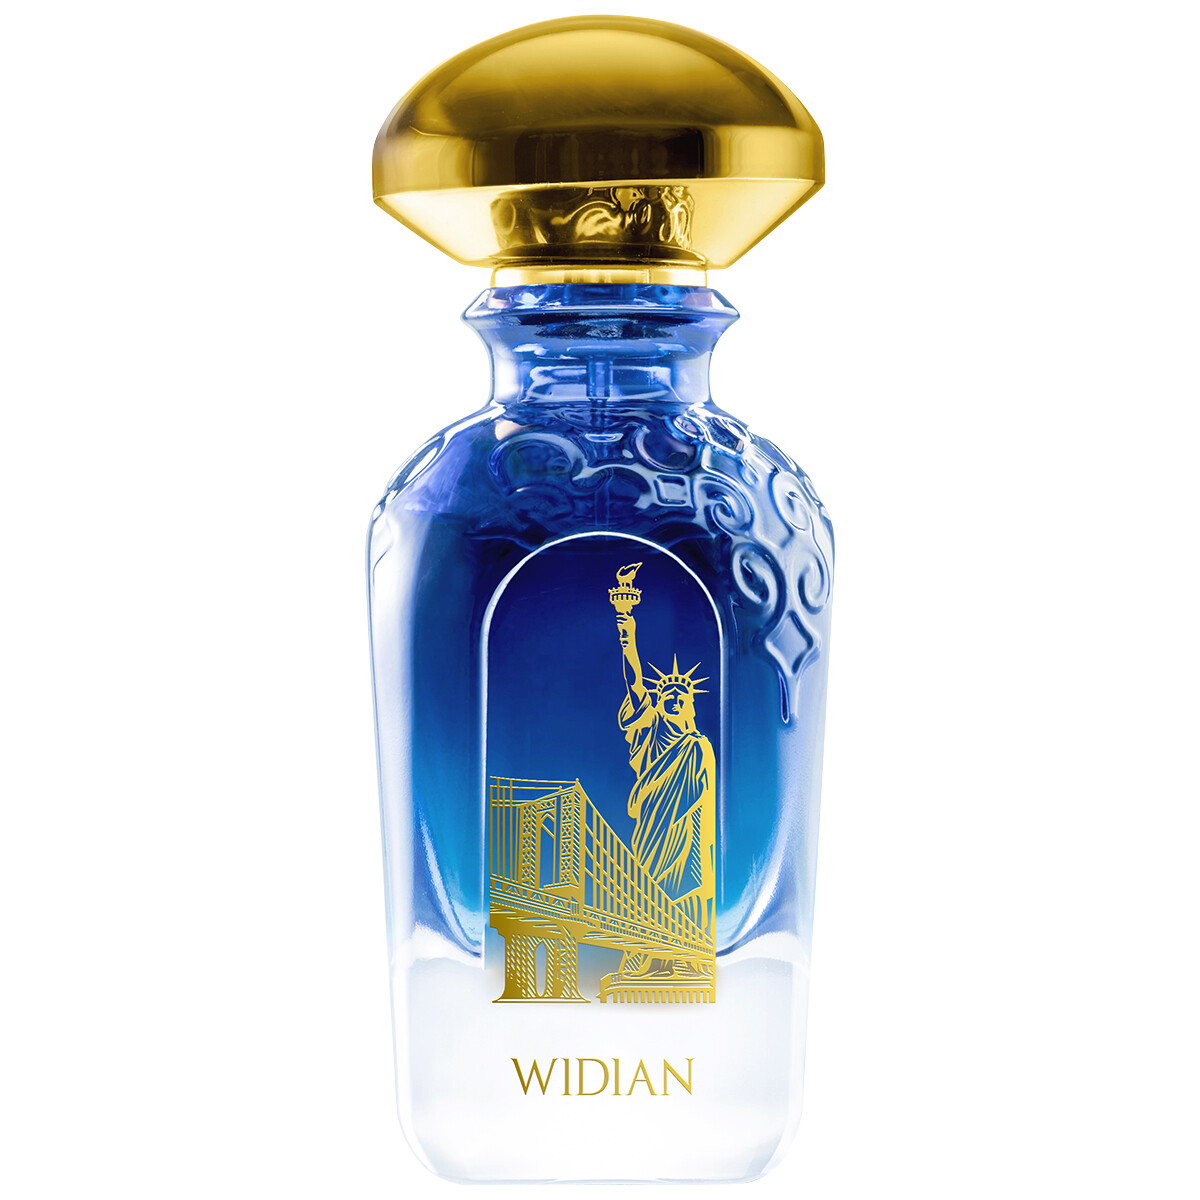 Luxus Parfum WIDIAN New York Parfum 50ml kaufen